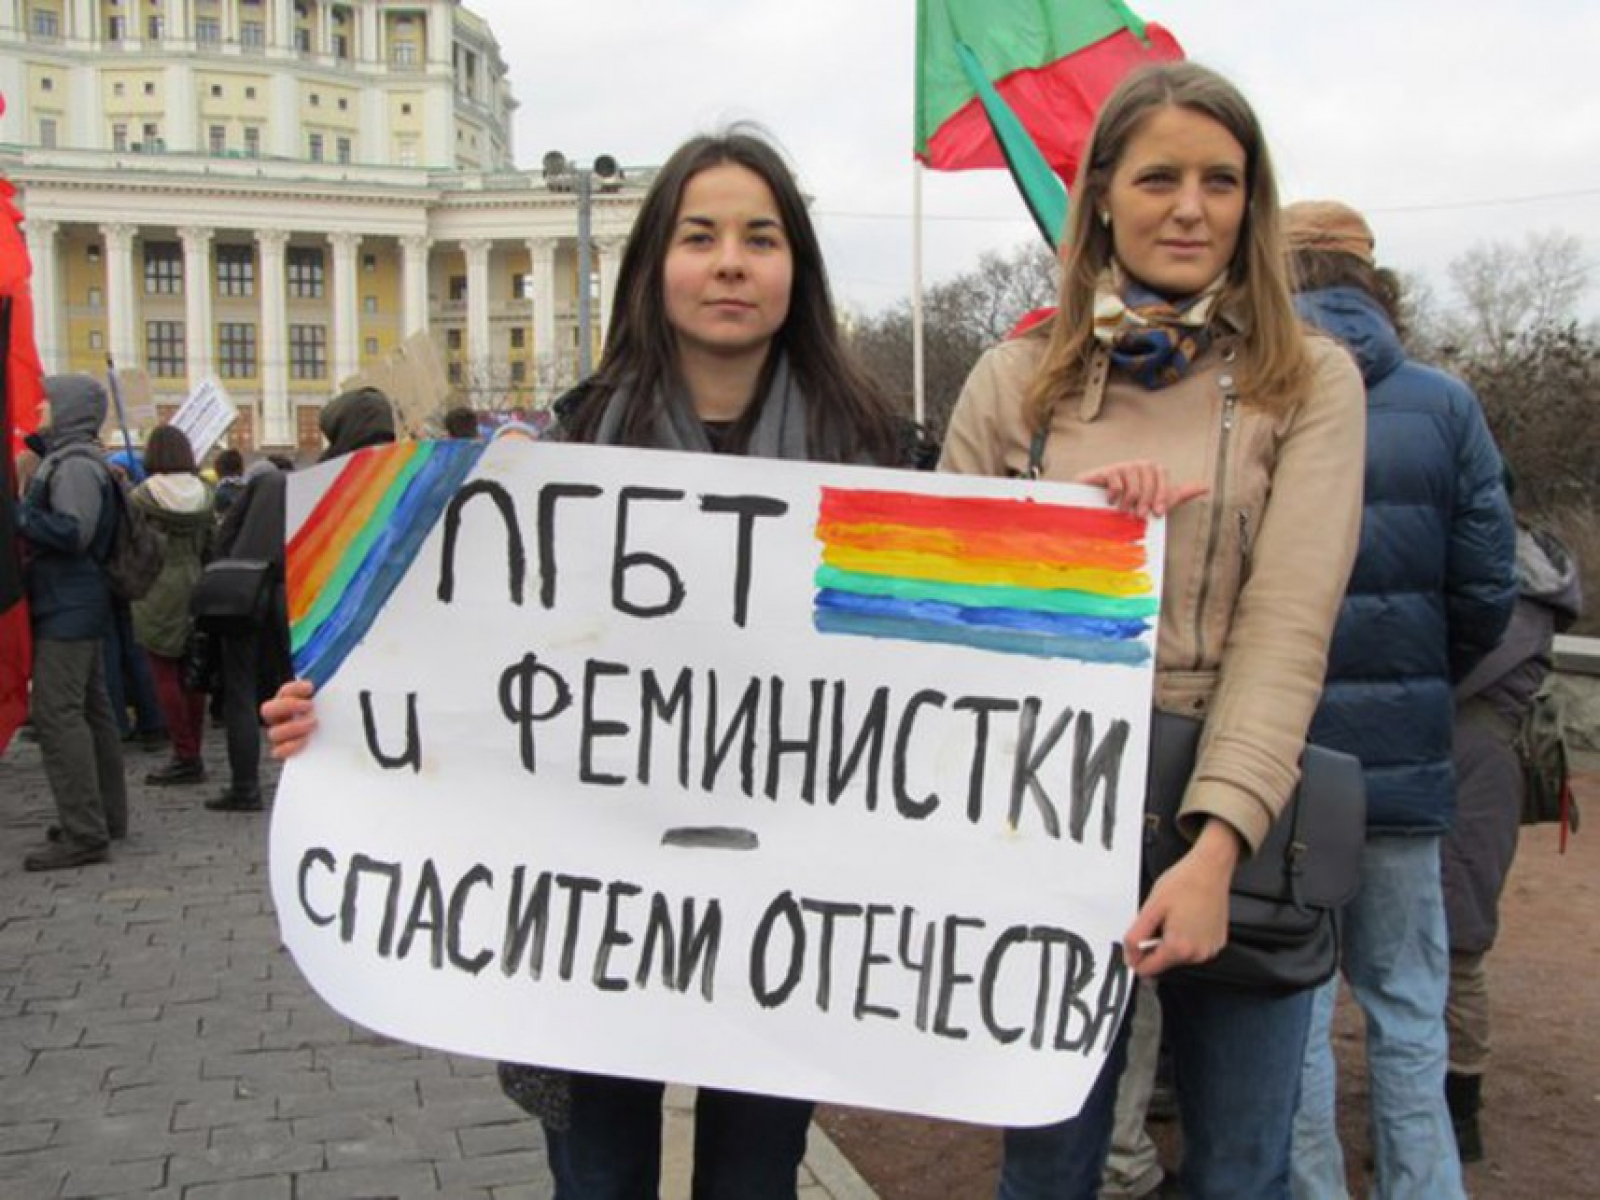 Феминизм запрещен в россии. Флаг феминисток.